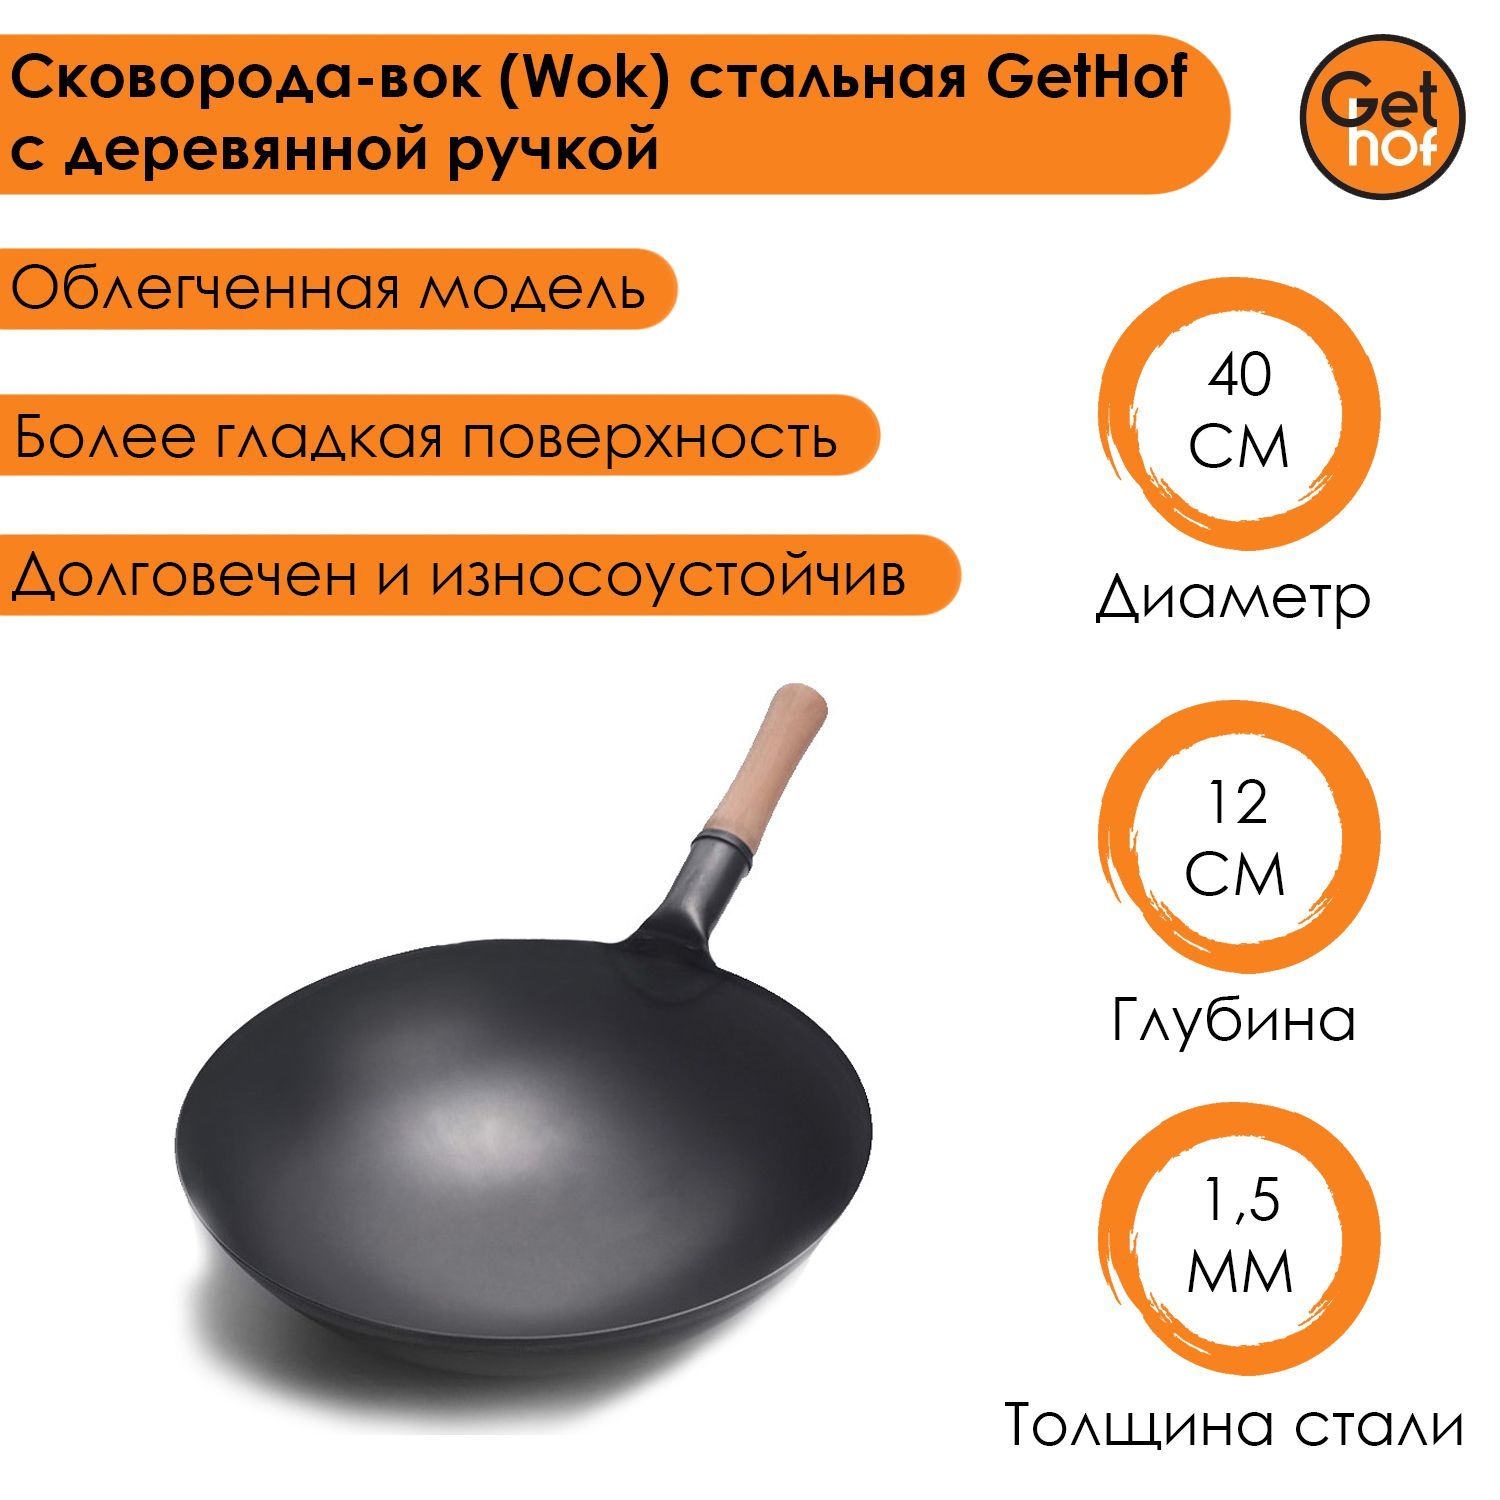 Сковорода-вок (Wok) стальная GetHof Premium с деревянной ручкой 40 см